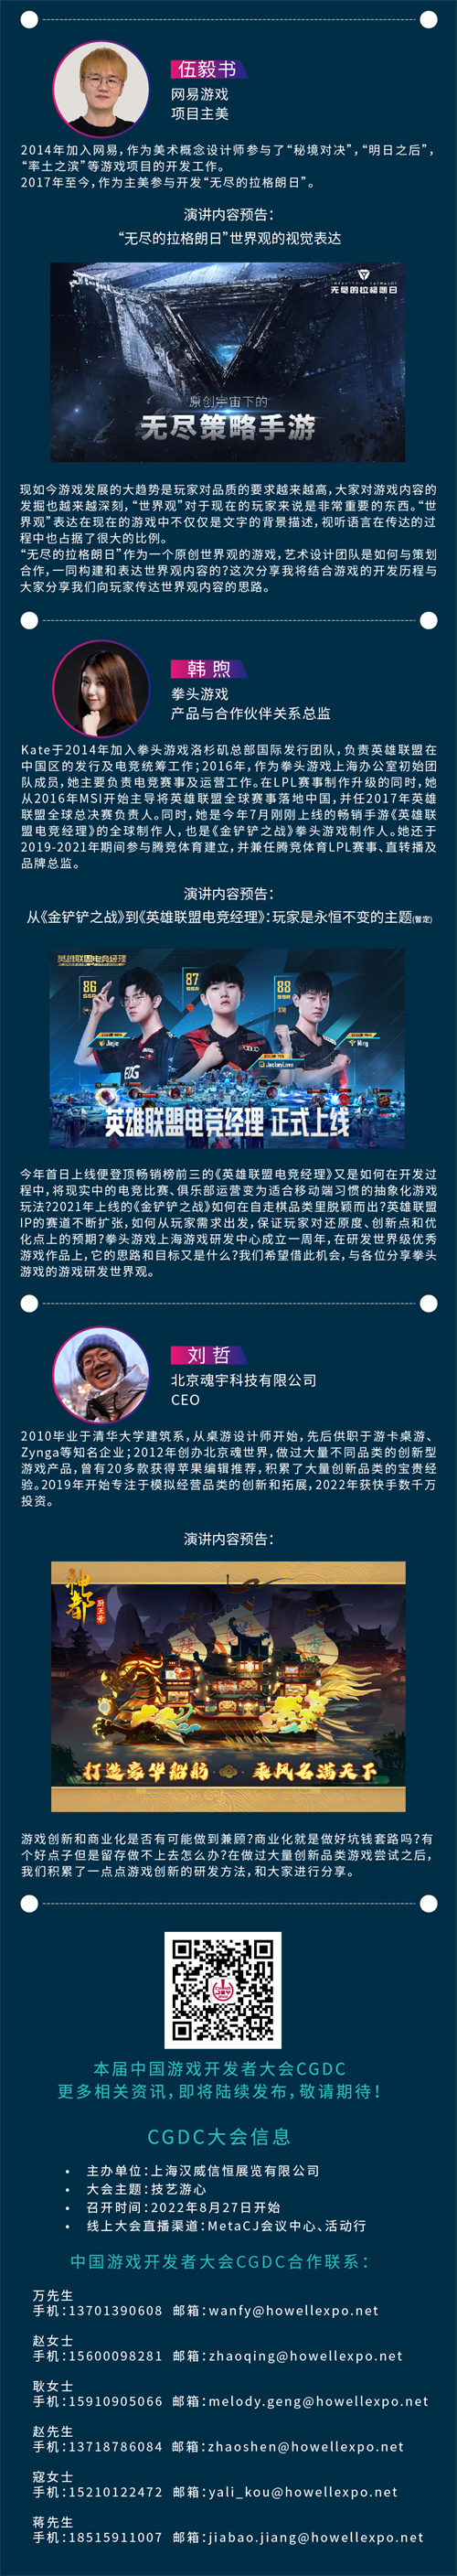 2022中国游戏开发者大会(CGDC)策略游戏专场部分嘉宾&话题抢先曝光!